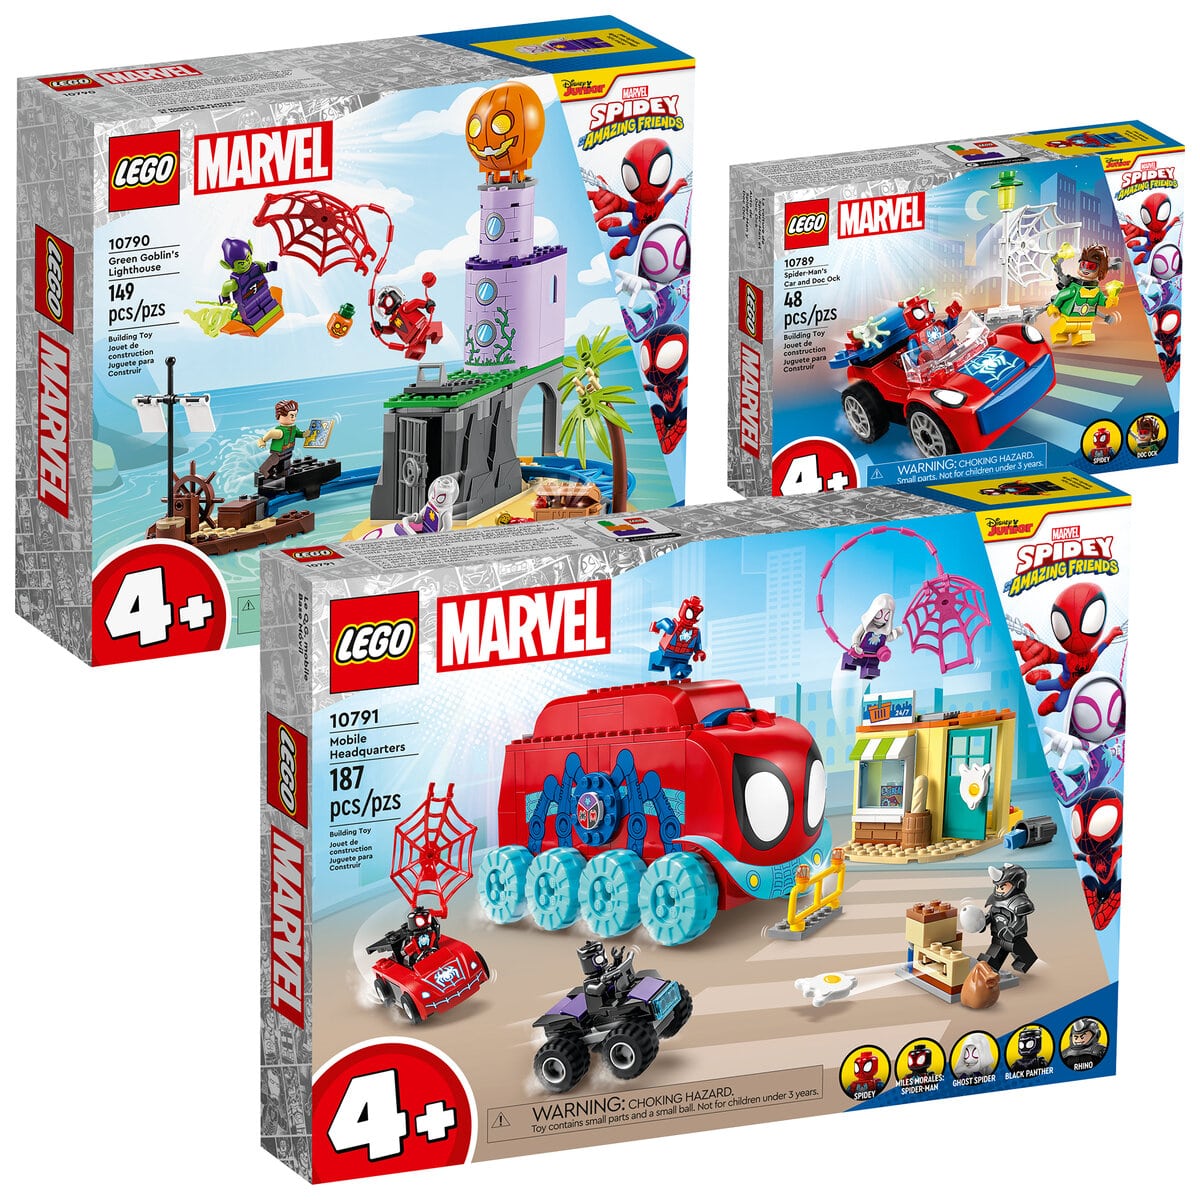 Nouveautés LEGO Marvel 2023 Spidey and his Amazing Friends : aussi